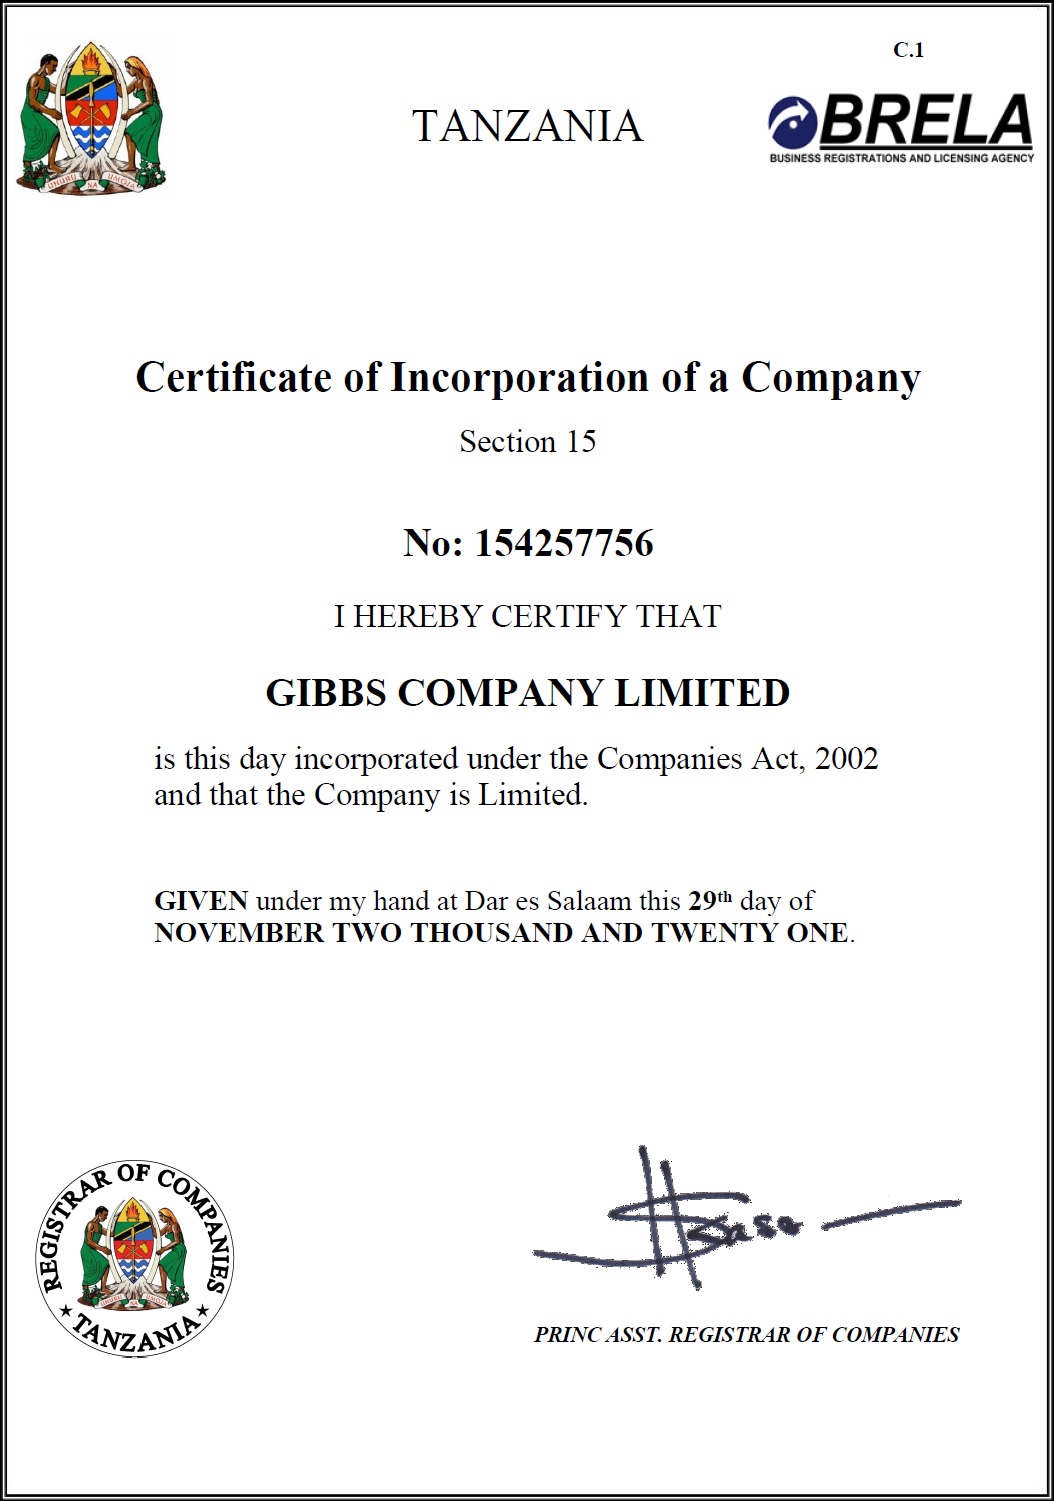 Gibbs Company Limited